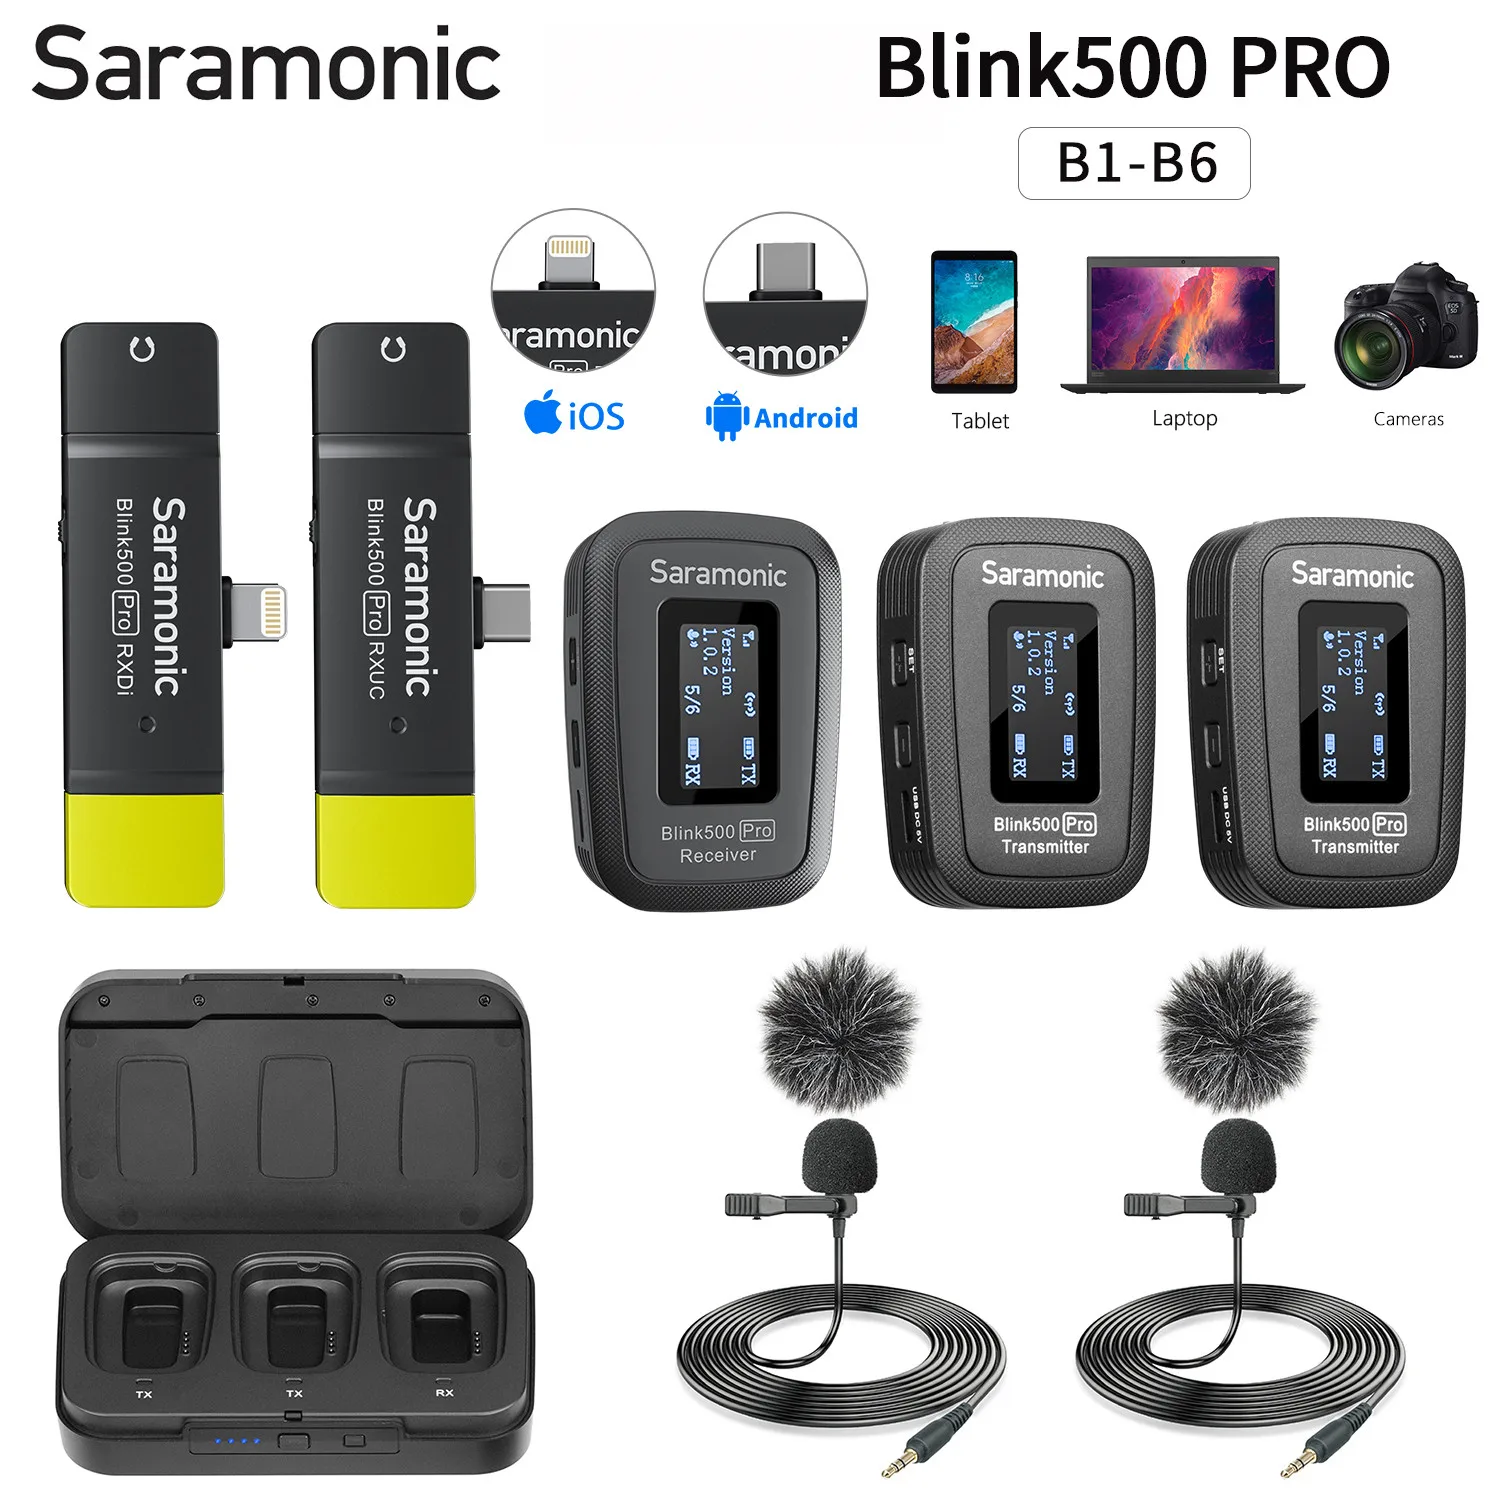 Saramonic Blink500 Pro 2.4GHz kondenser kablosuz yaka mikrofonu PC mobil iPhone Android dslr kameralar için akışı